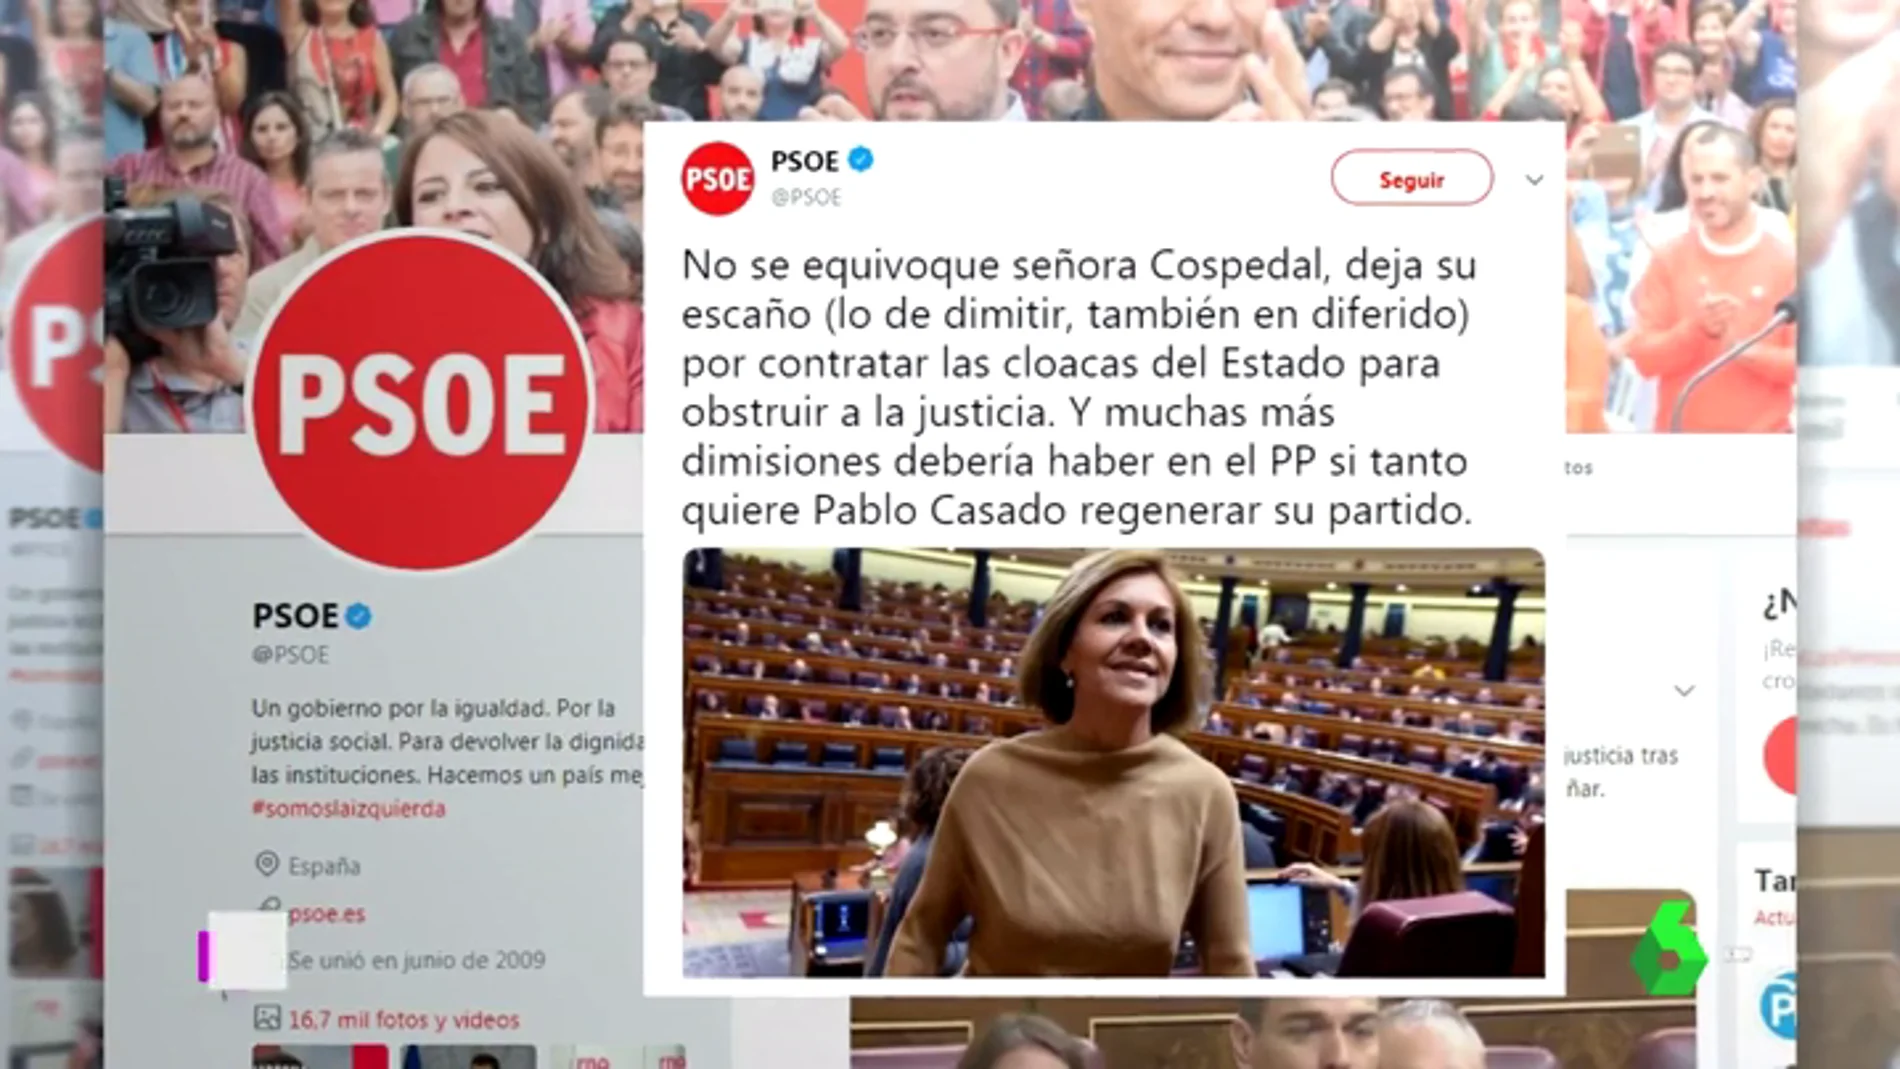 El PSOE critica la marcha "en diferido" de Cospedal